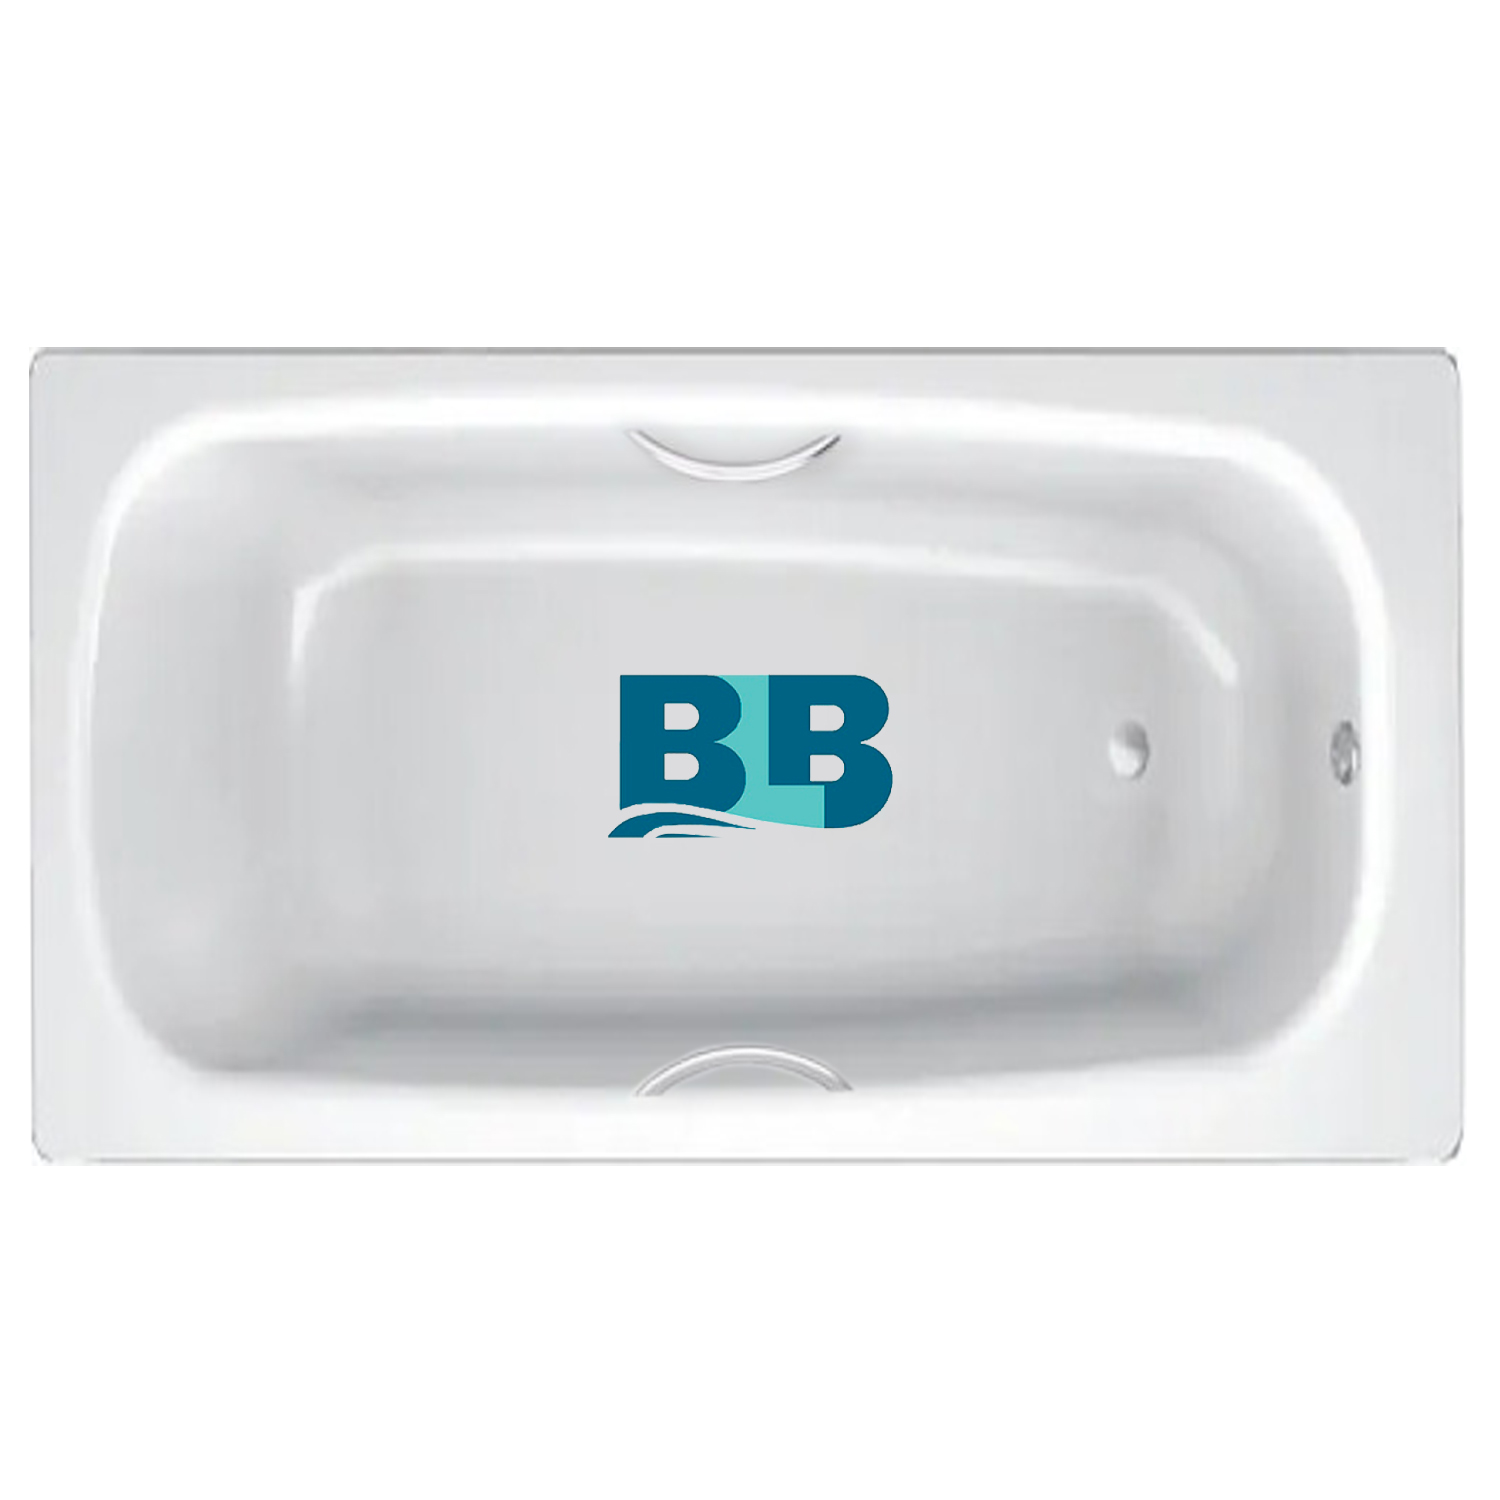 Ванна стальная blb europa. BLB apmstdbl1. Ванна стальная Universal HG BLB, С отверстиями для ручек. Код: 211310 стальная ванна BLB Universal b70h 170x70 см, с ножками apmstdbl1. Ванна стальная с ручками 150х75 и выступами.